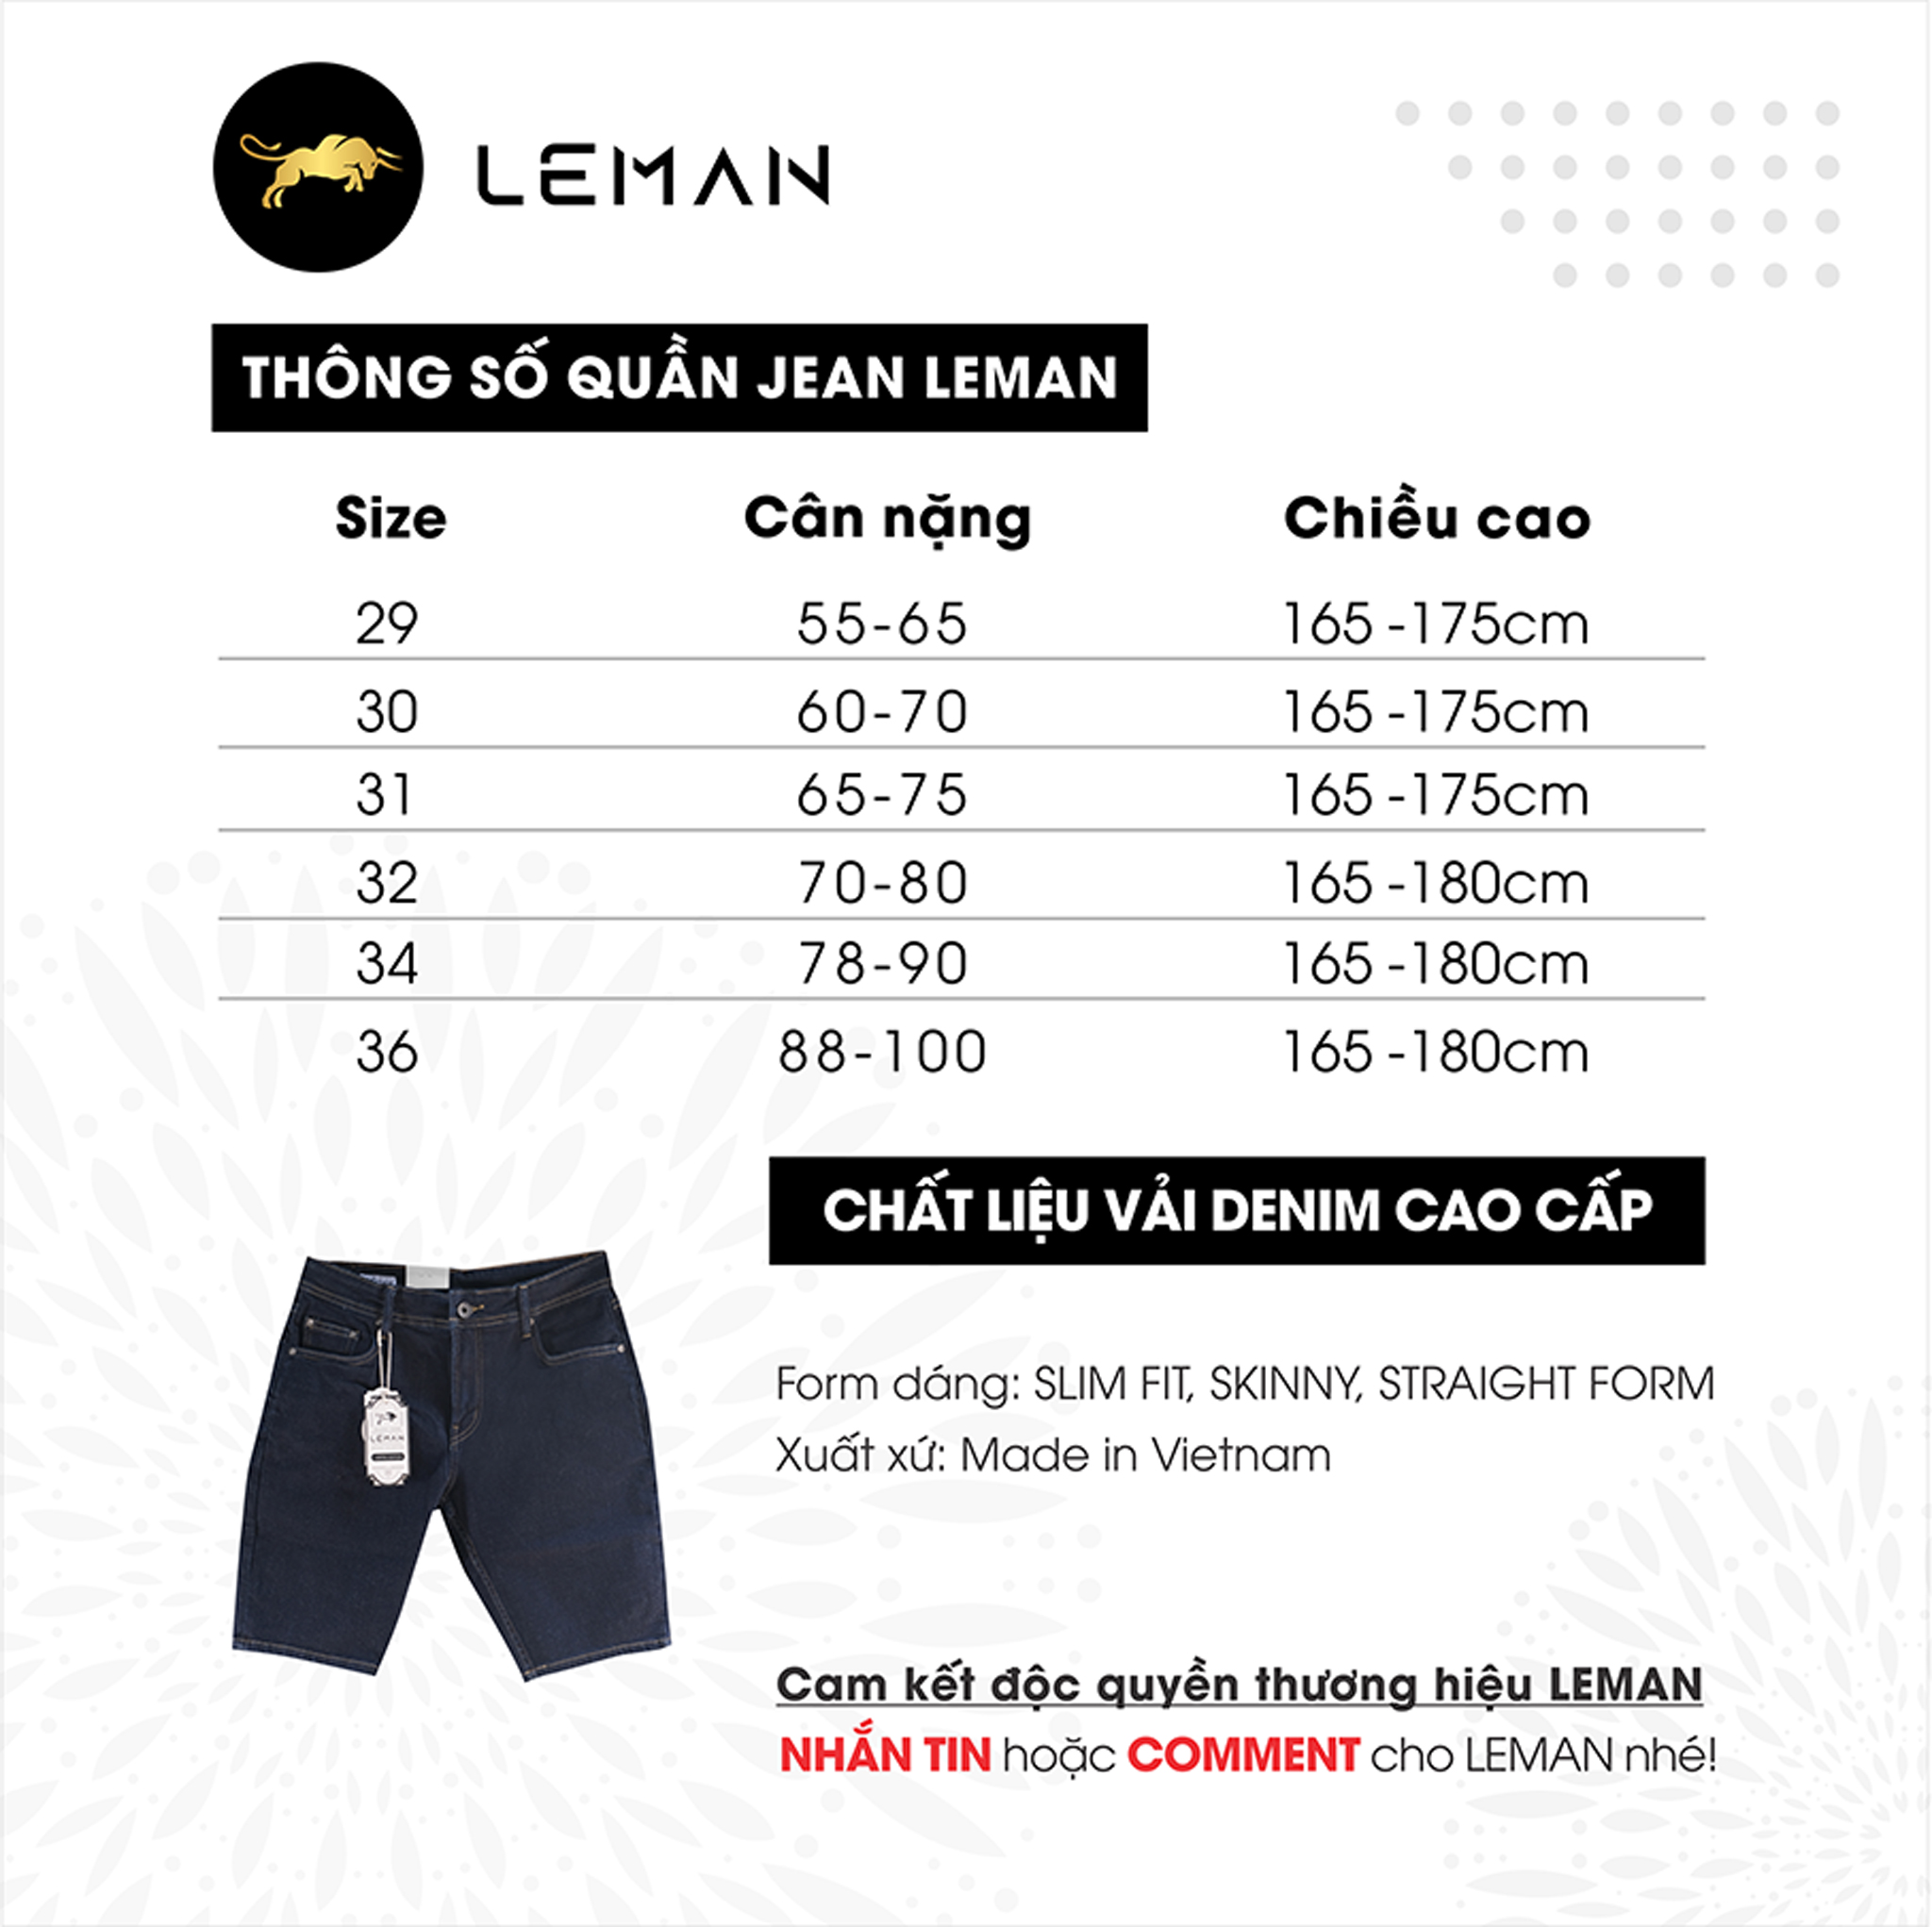 Quần Short Jean nam Leman xanh trơn JL04 - Slim Form